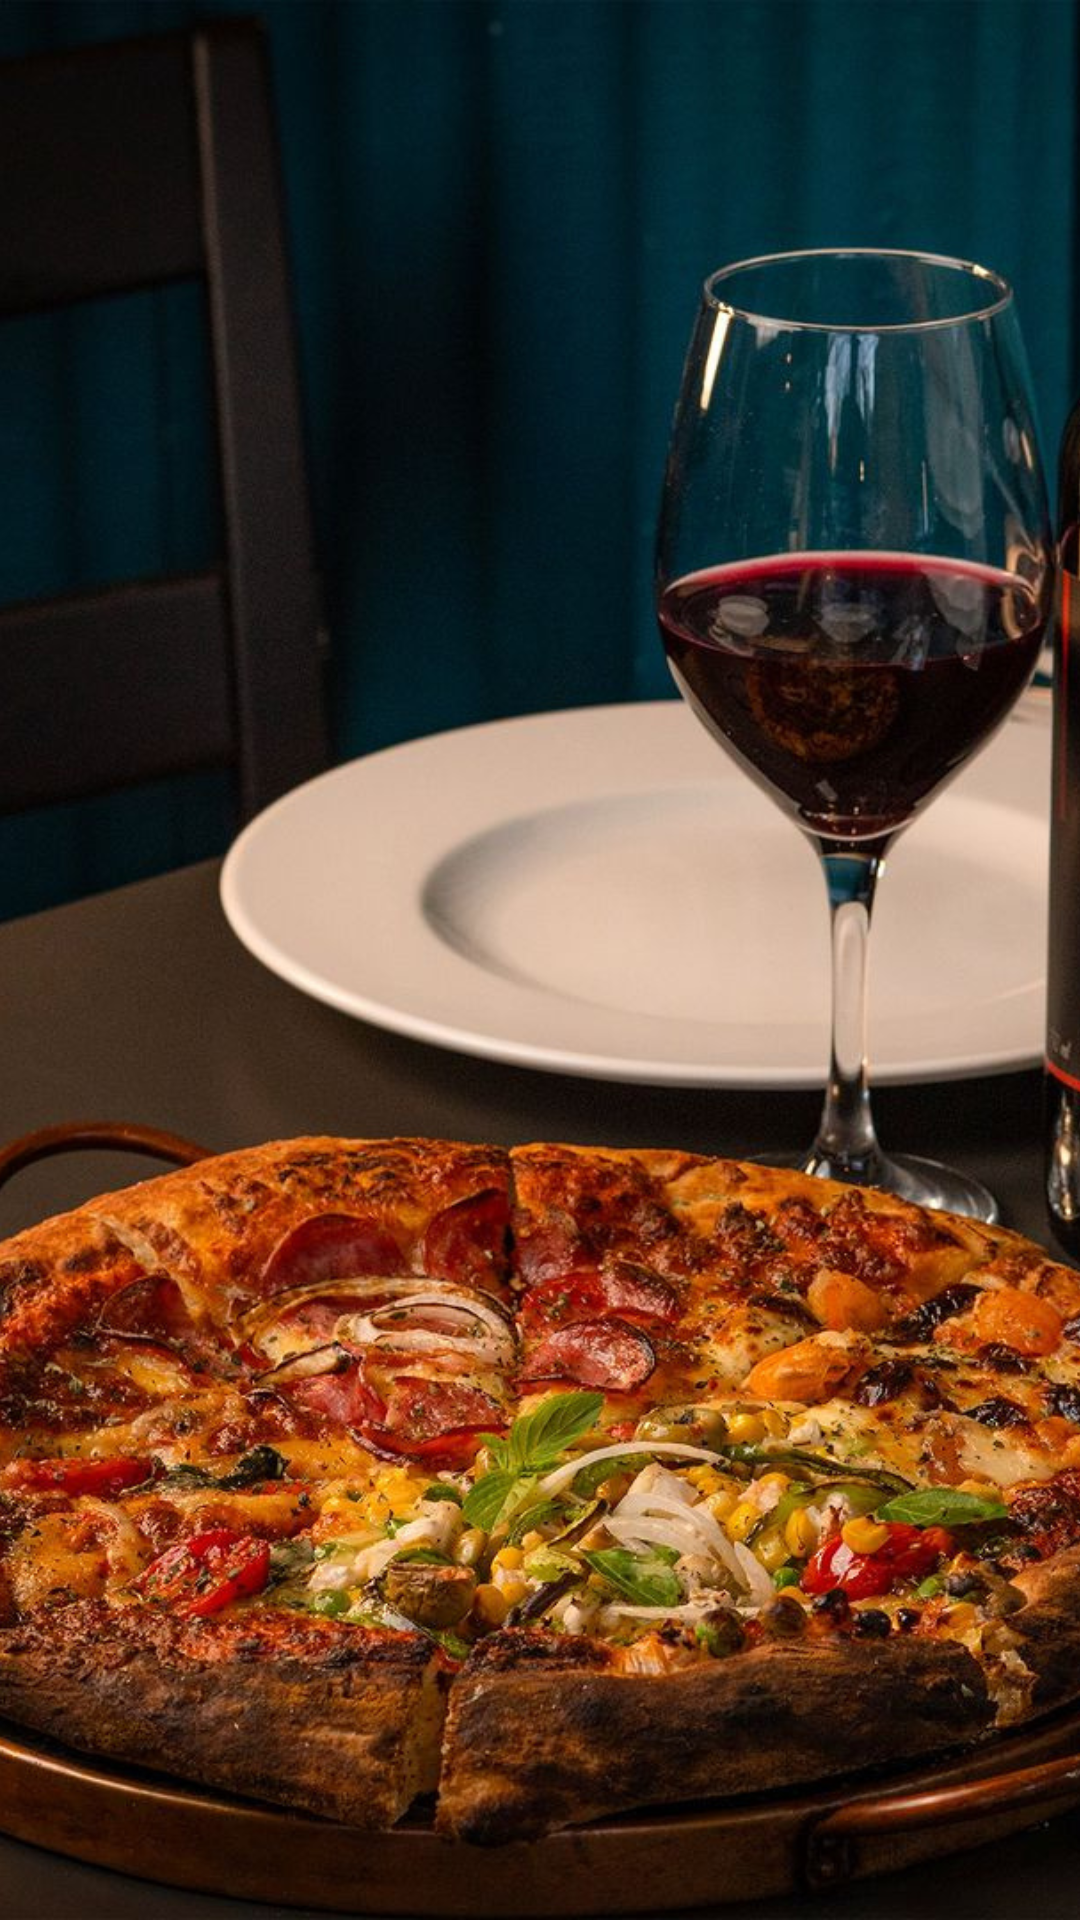 Uma pizza e uma taça de vinho estão sobre uma mesa.